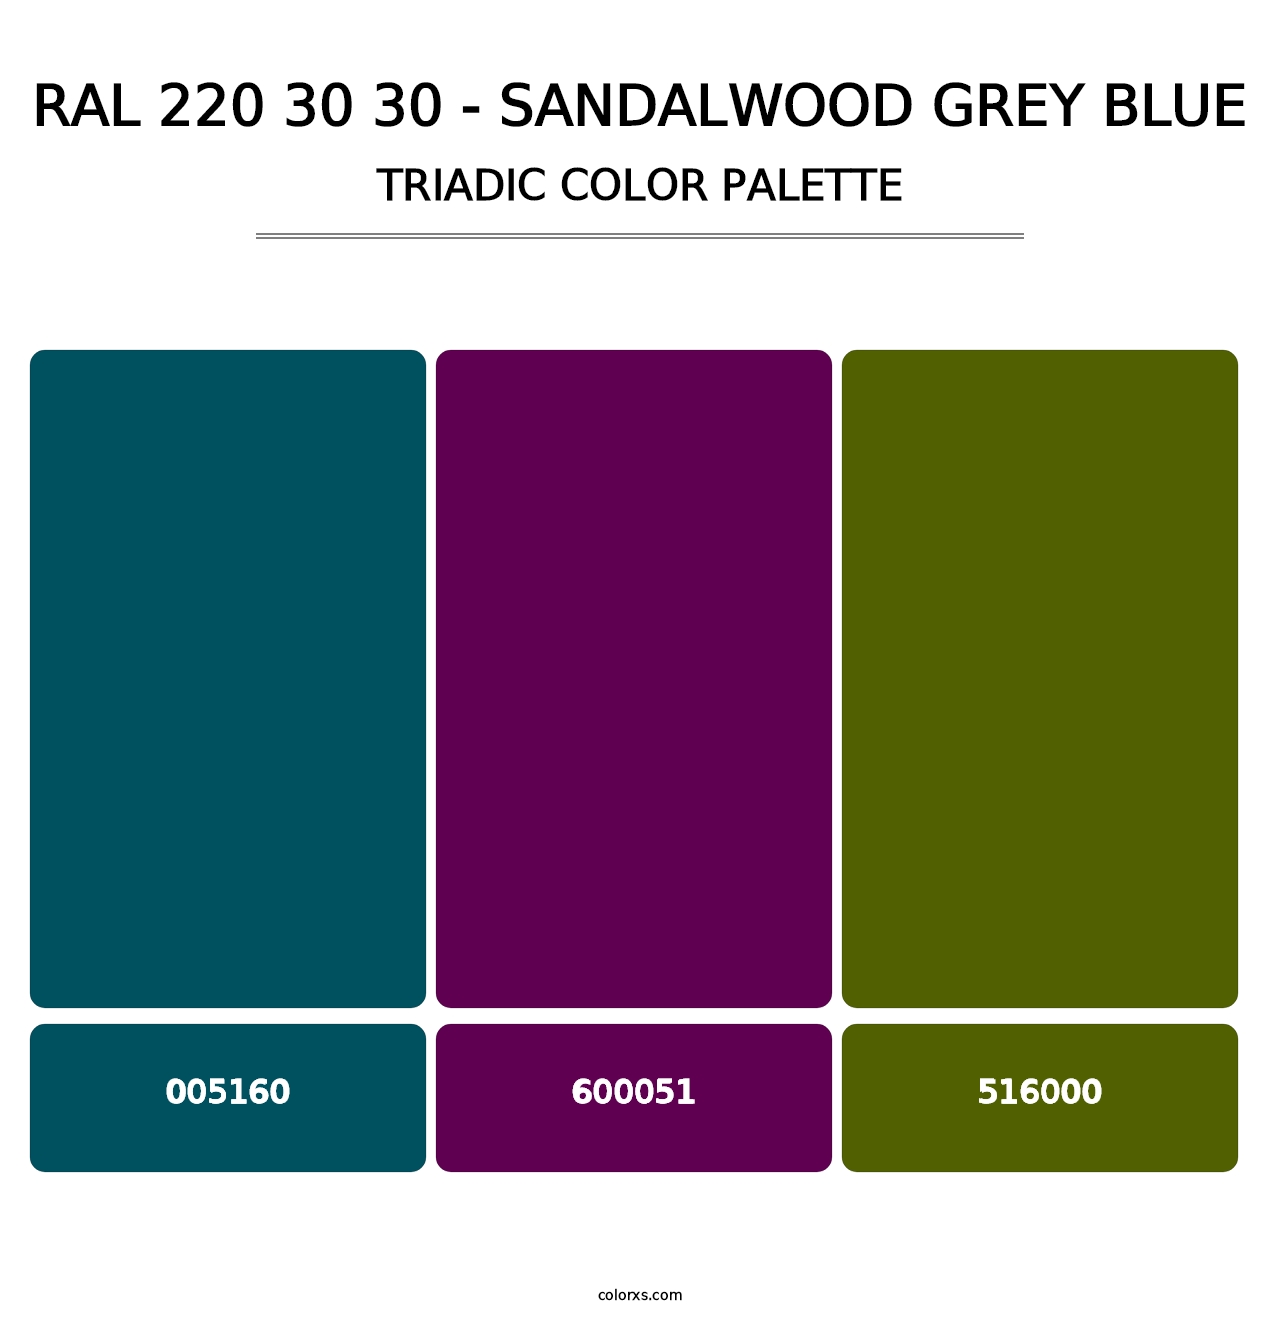 RAL 220 30 30 - Sandalwood Grey Blue - Triadic Color Palette